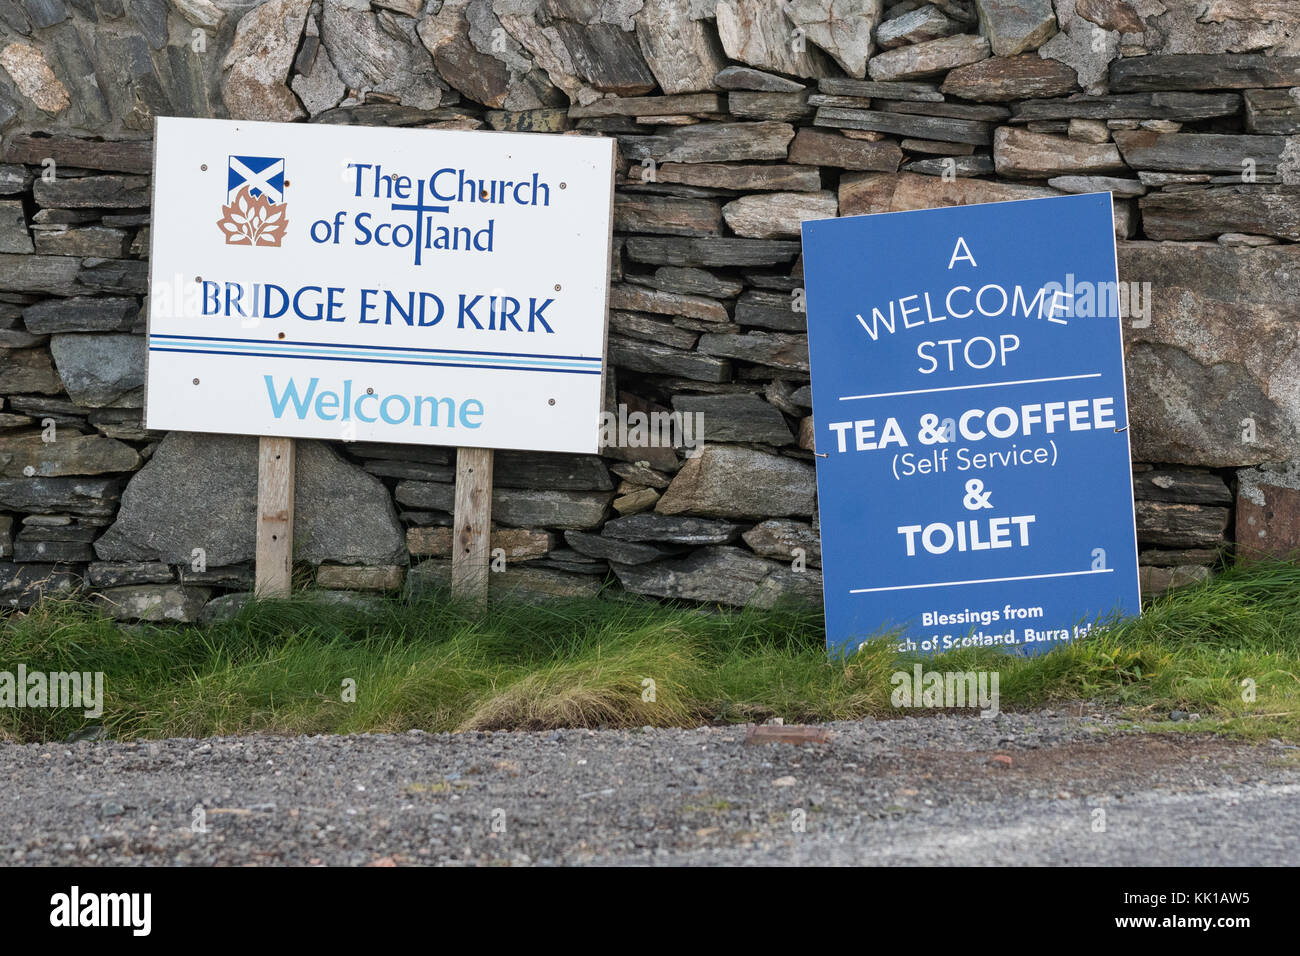 Bridge End Kirk, Burra, Shetland Islands - cartello "A welcome stop" sul lato della strada che offre rinfreschi e servizi igienici Foto Stock